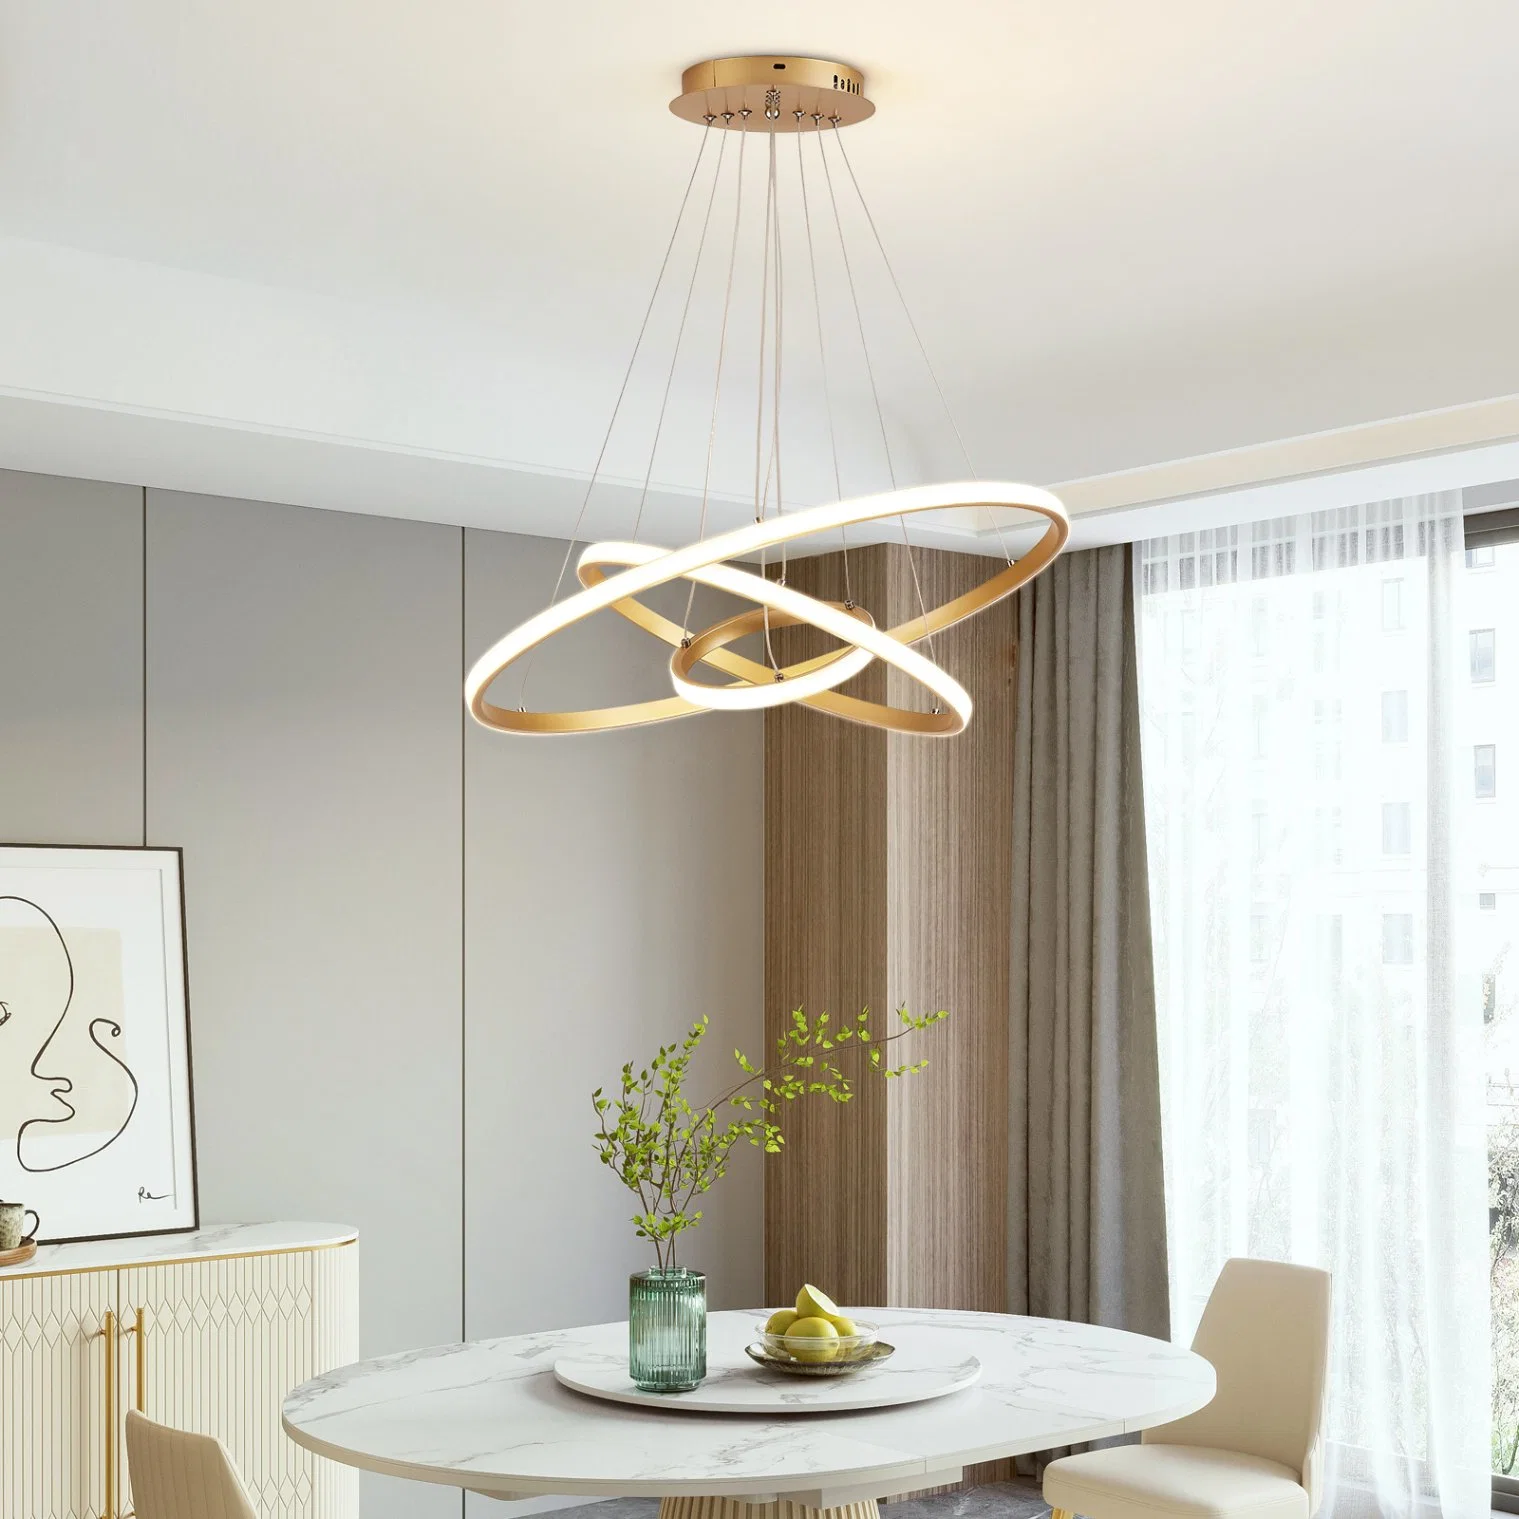 Design moderno e simples Lustre Pendente de Iluminação Interior luz para o apartamento sala de estar